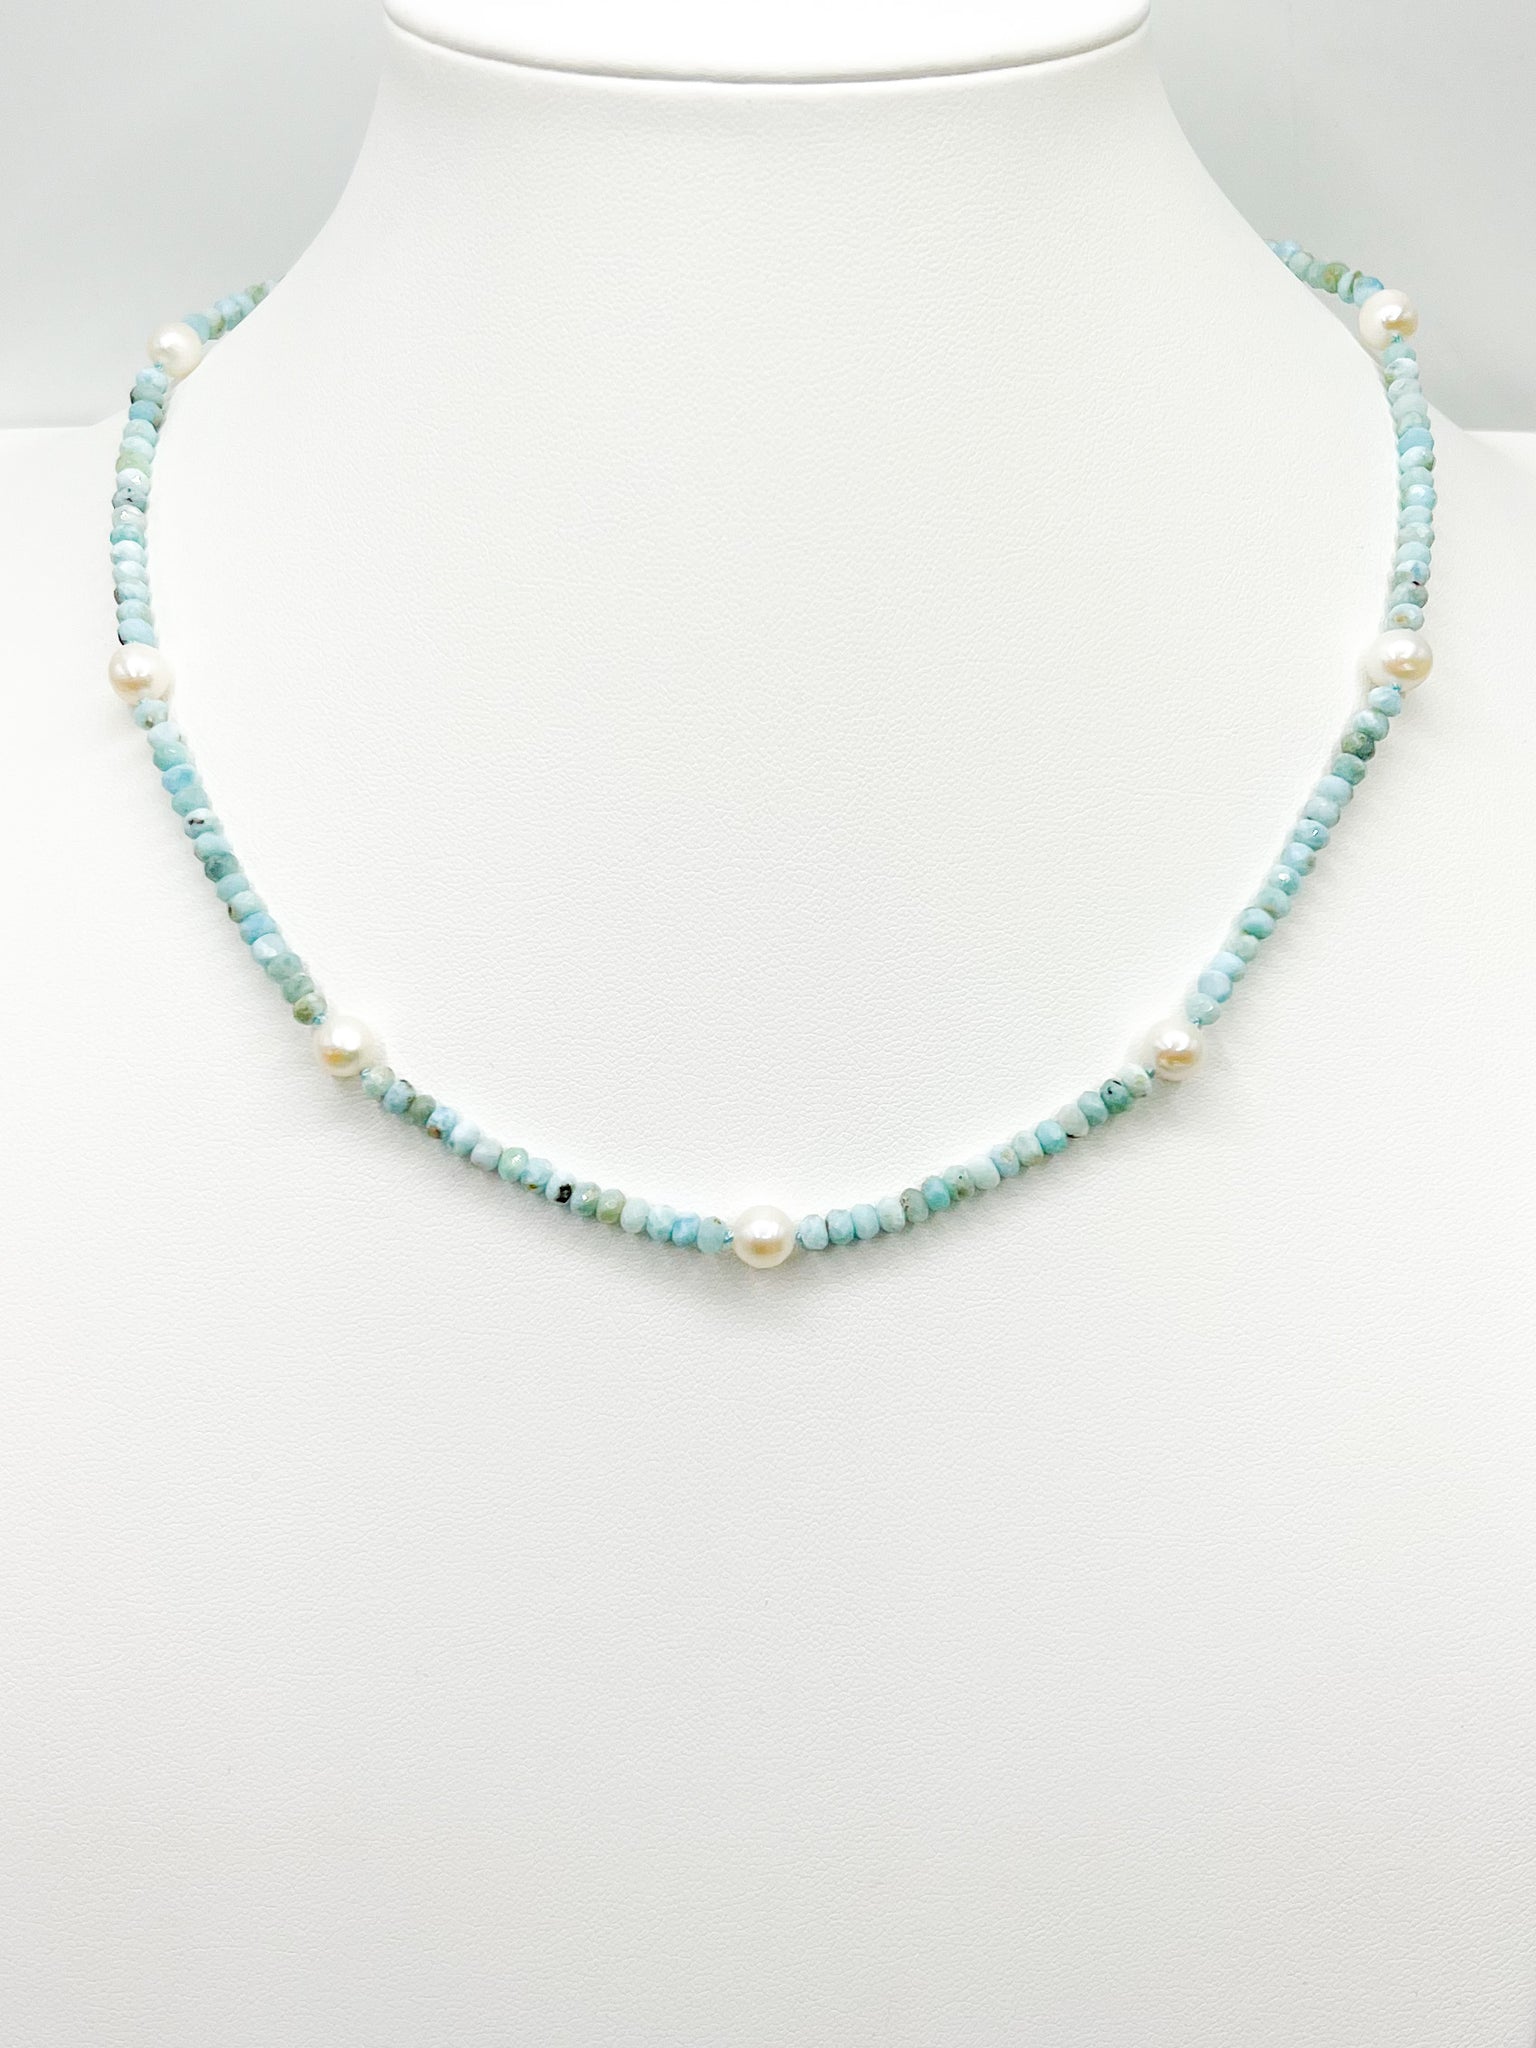 The Barahona necklace